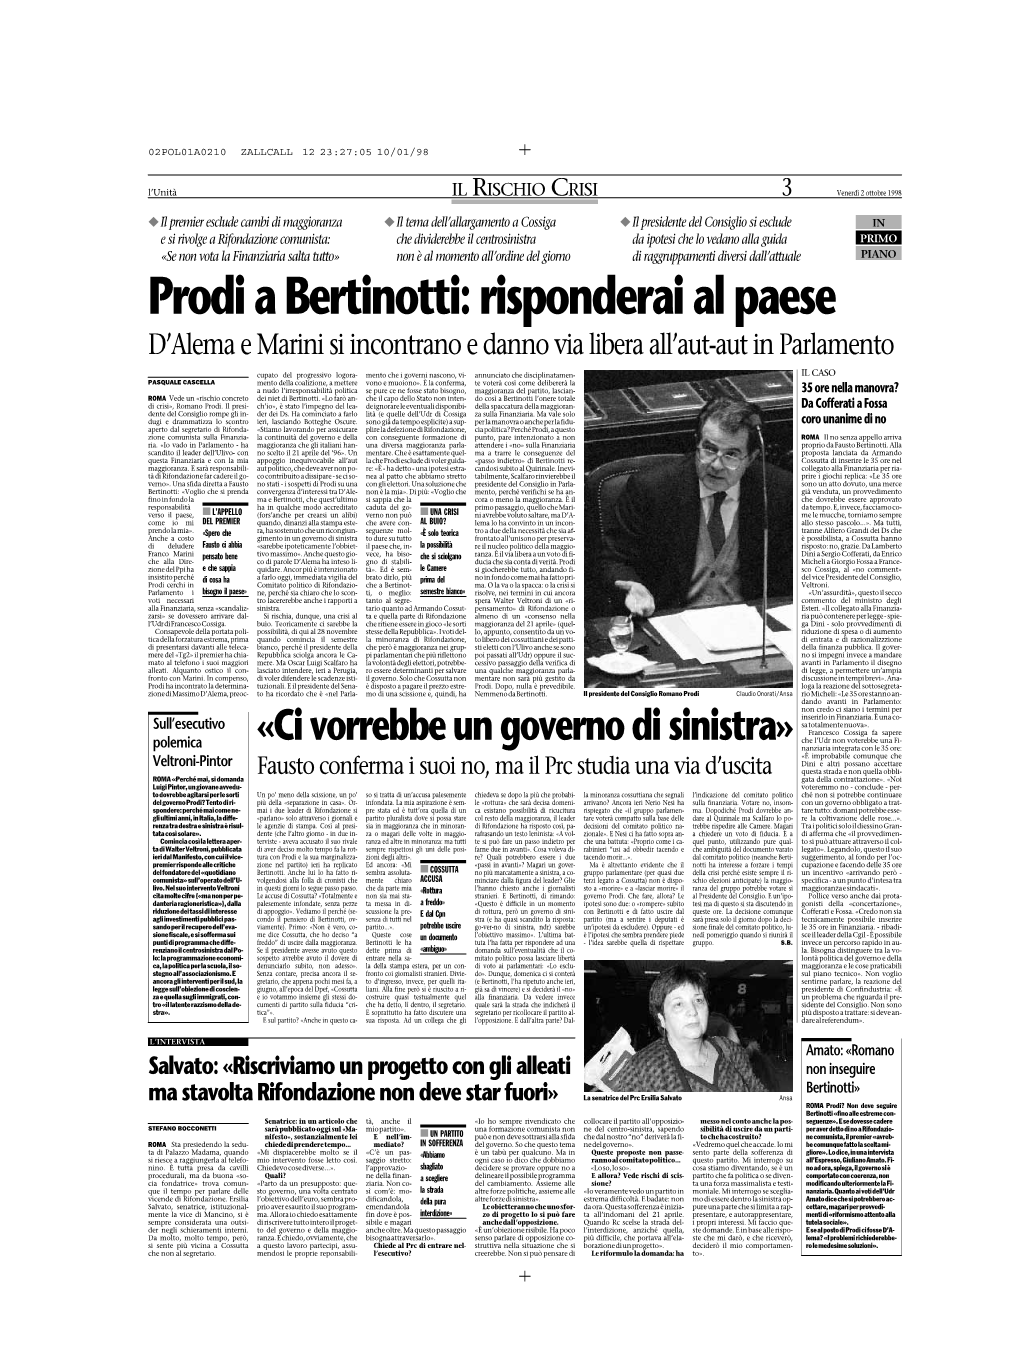 Prodi a Bertinotti: Risponderai Al Paese D’Alema E Marini Si Incontrano E Danno Via Libera All’Aut-Aut in Parlamento